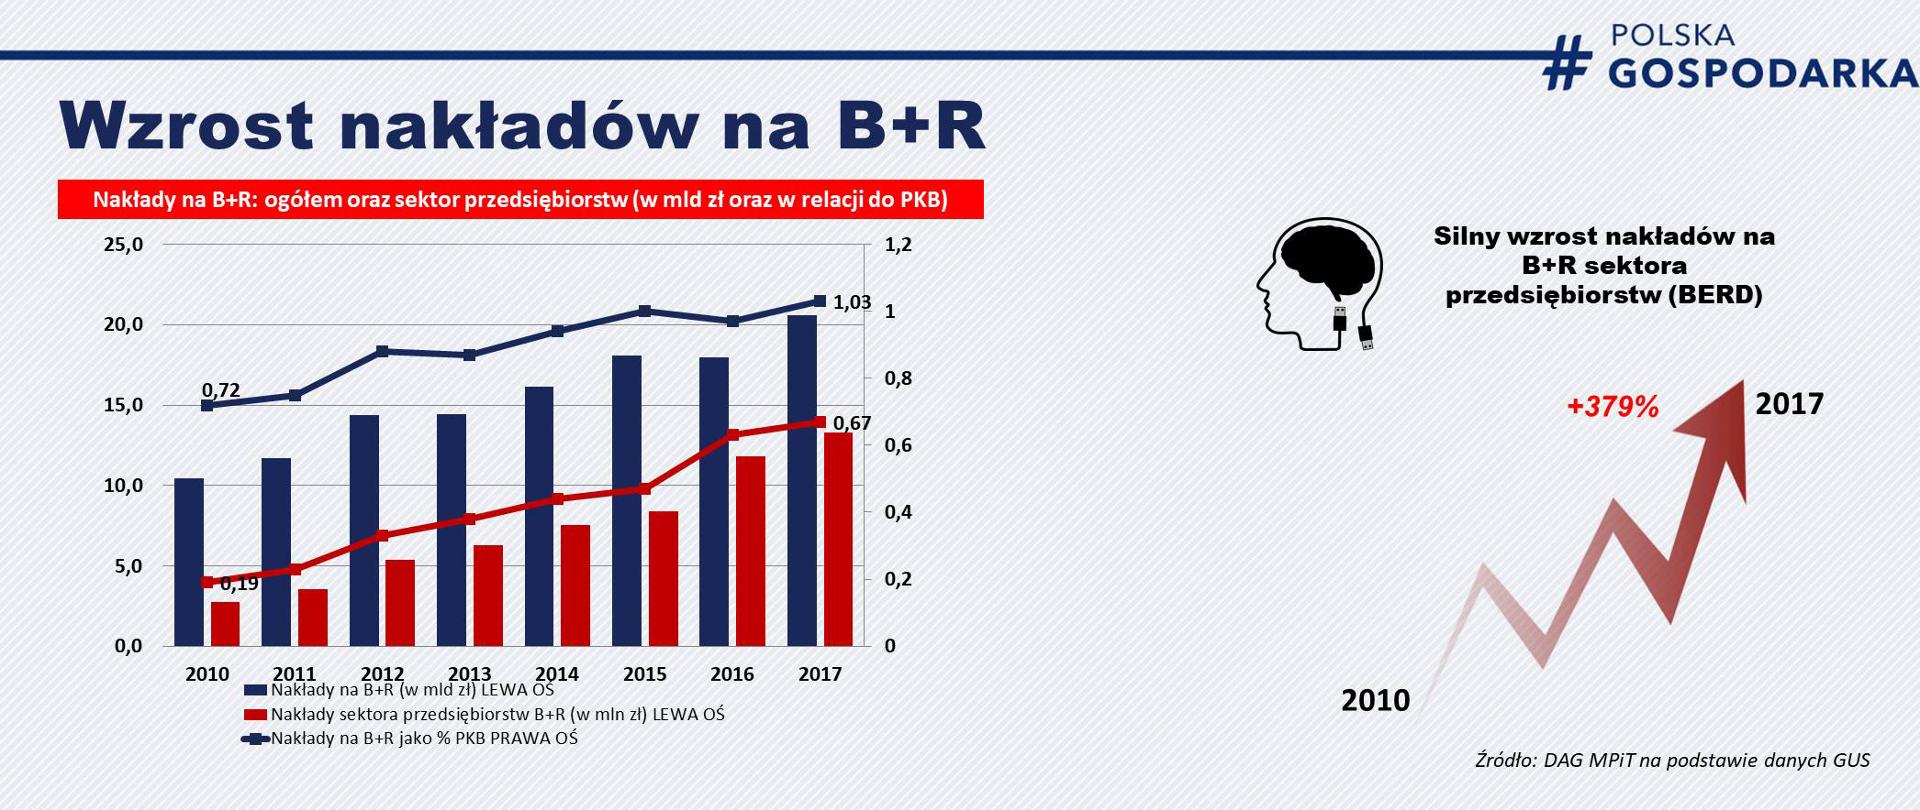 Wykres przedstawiający wzrost nakładów na B+R w latach 2010-2017